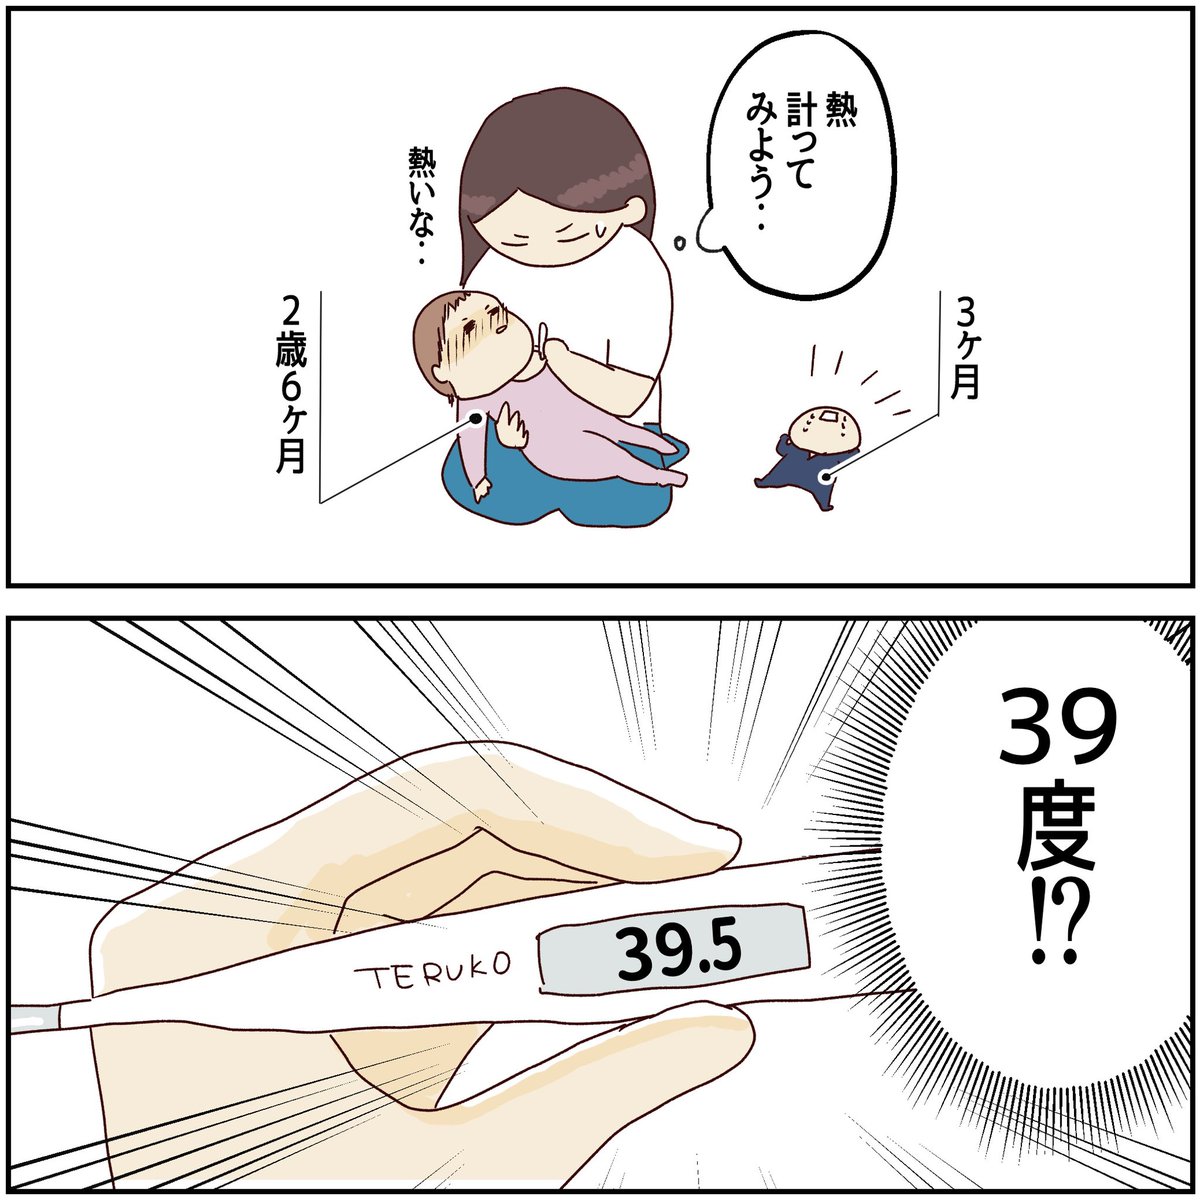 川崎病 手遅れになりかけた話【2】
(1/3)

#川崎病 #育児漫画 